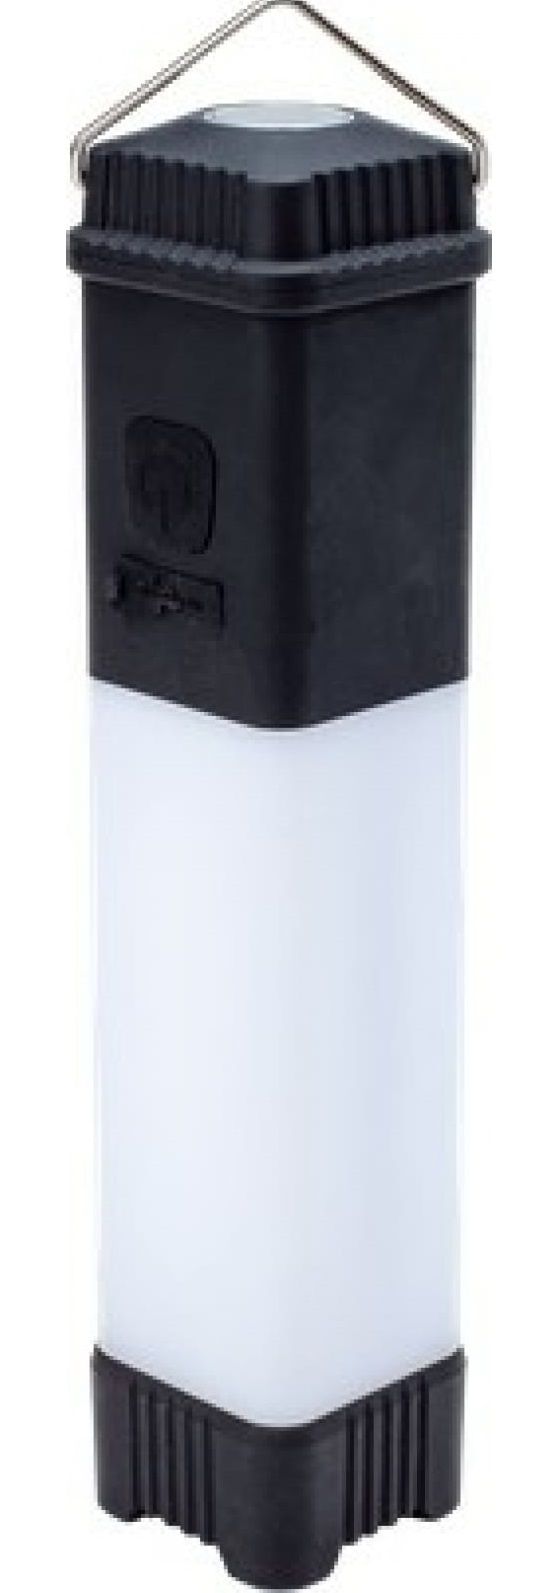 Фонарь КОСМОС Premium KOSAUMP6005 3Вт напр. свет., 24*0,5Вт SMD LED, литий 1200mAh